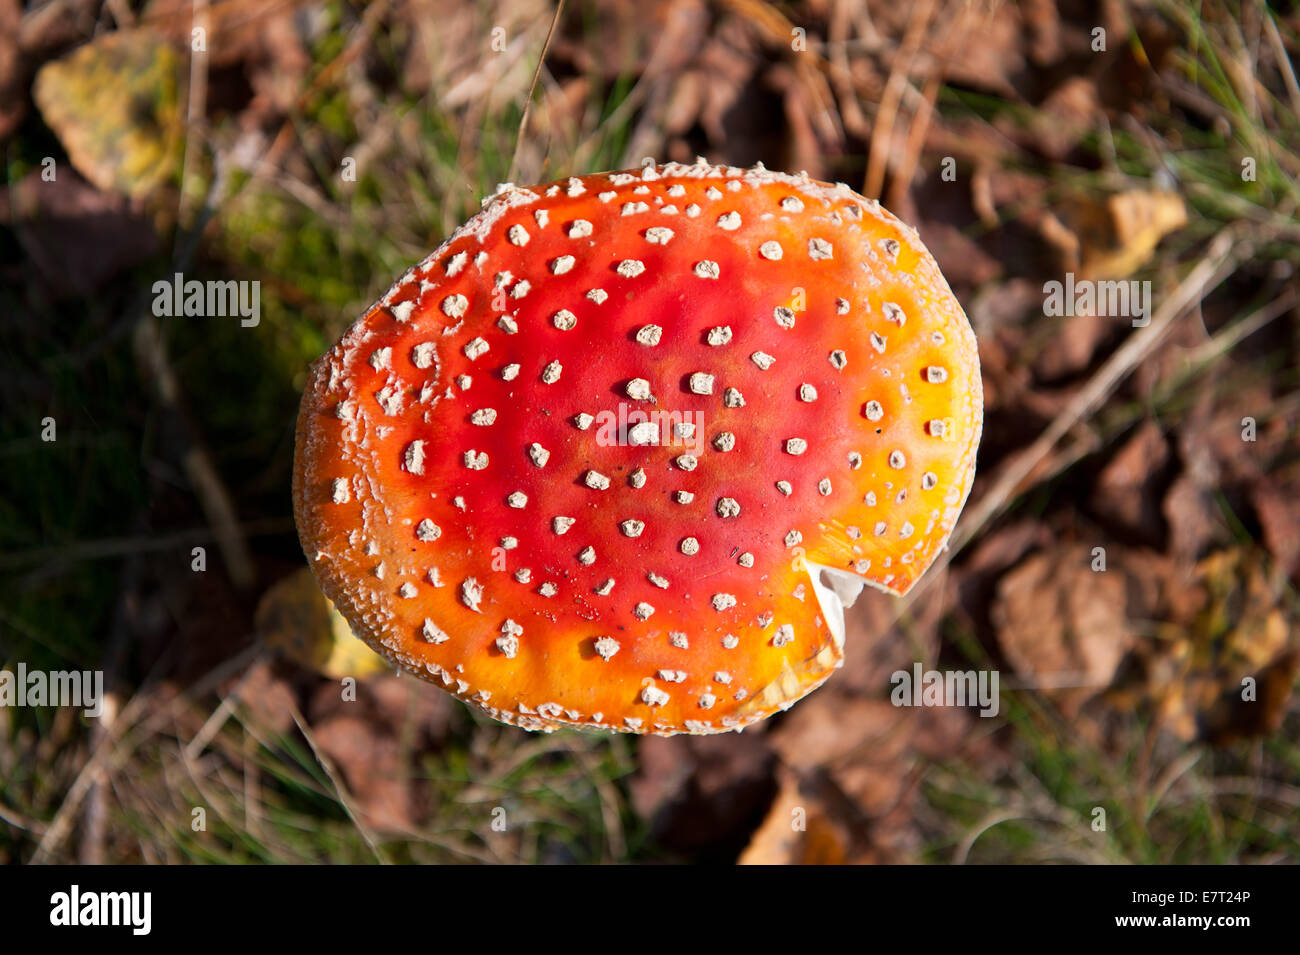 Poisonous Amanita muscaria cap of red mushroom Stock Photo